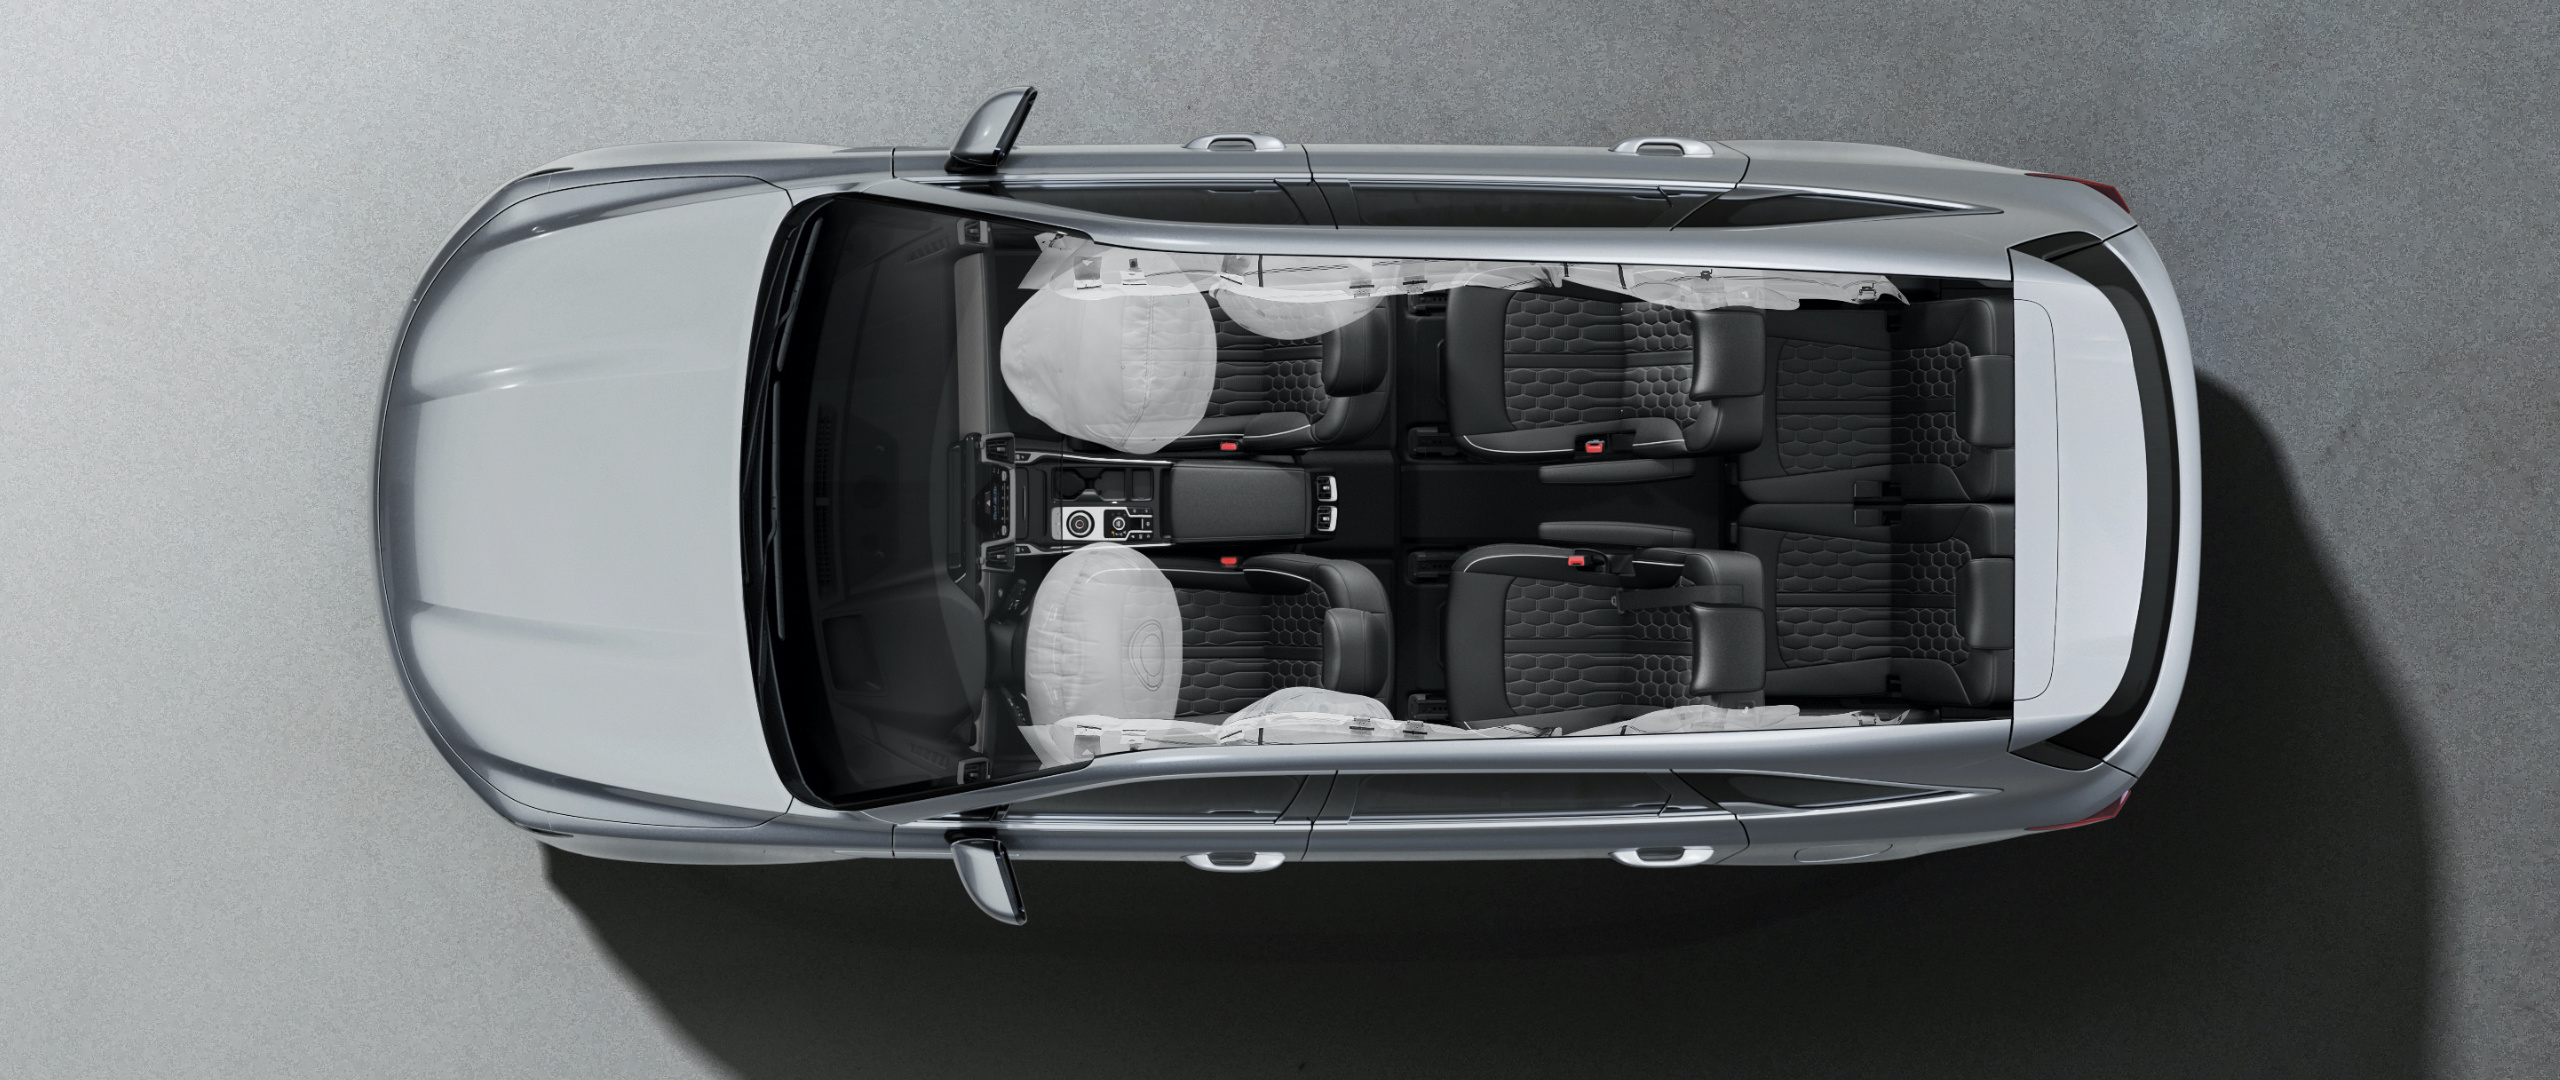 Vista superior de las bolsas de aire inteligentes del Kia Sorento Hybrid 2022